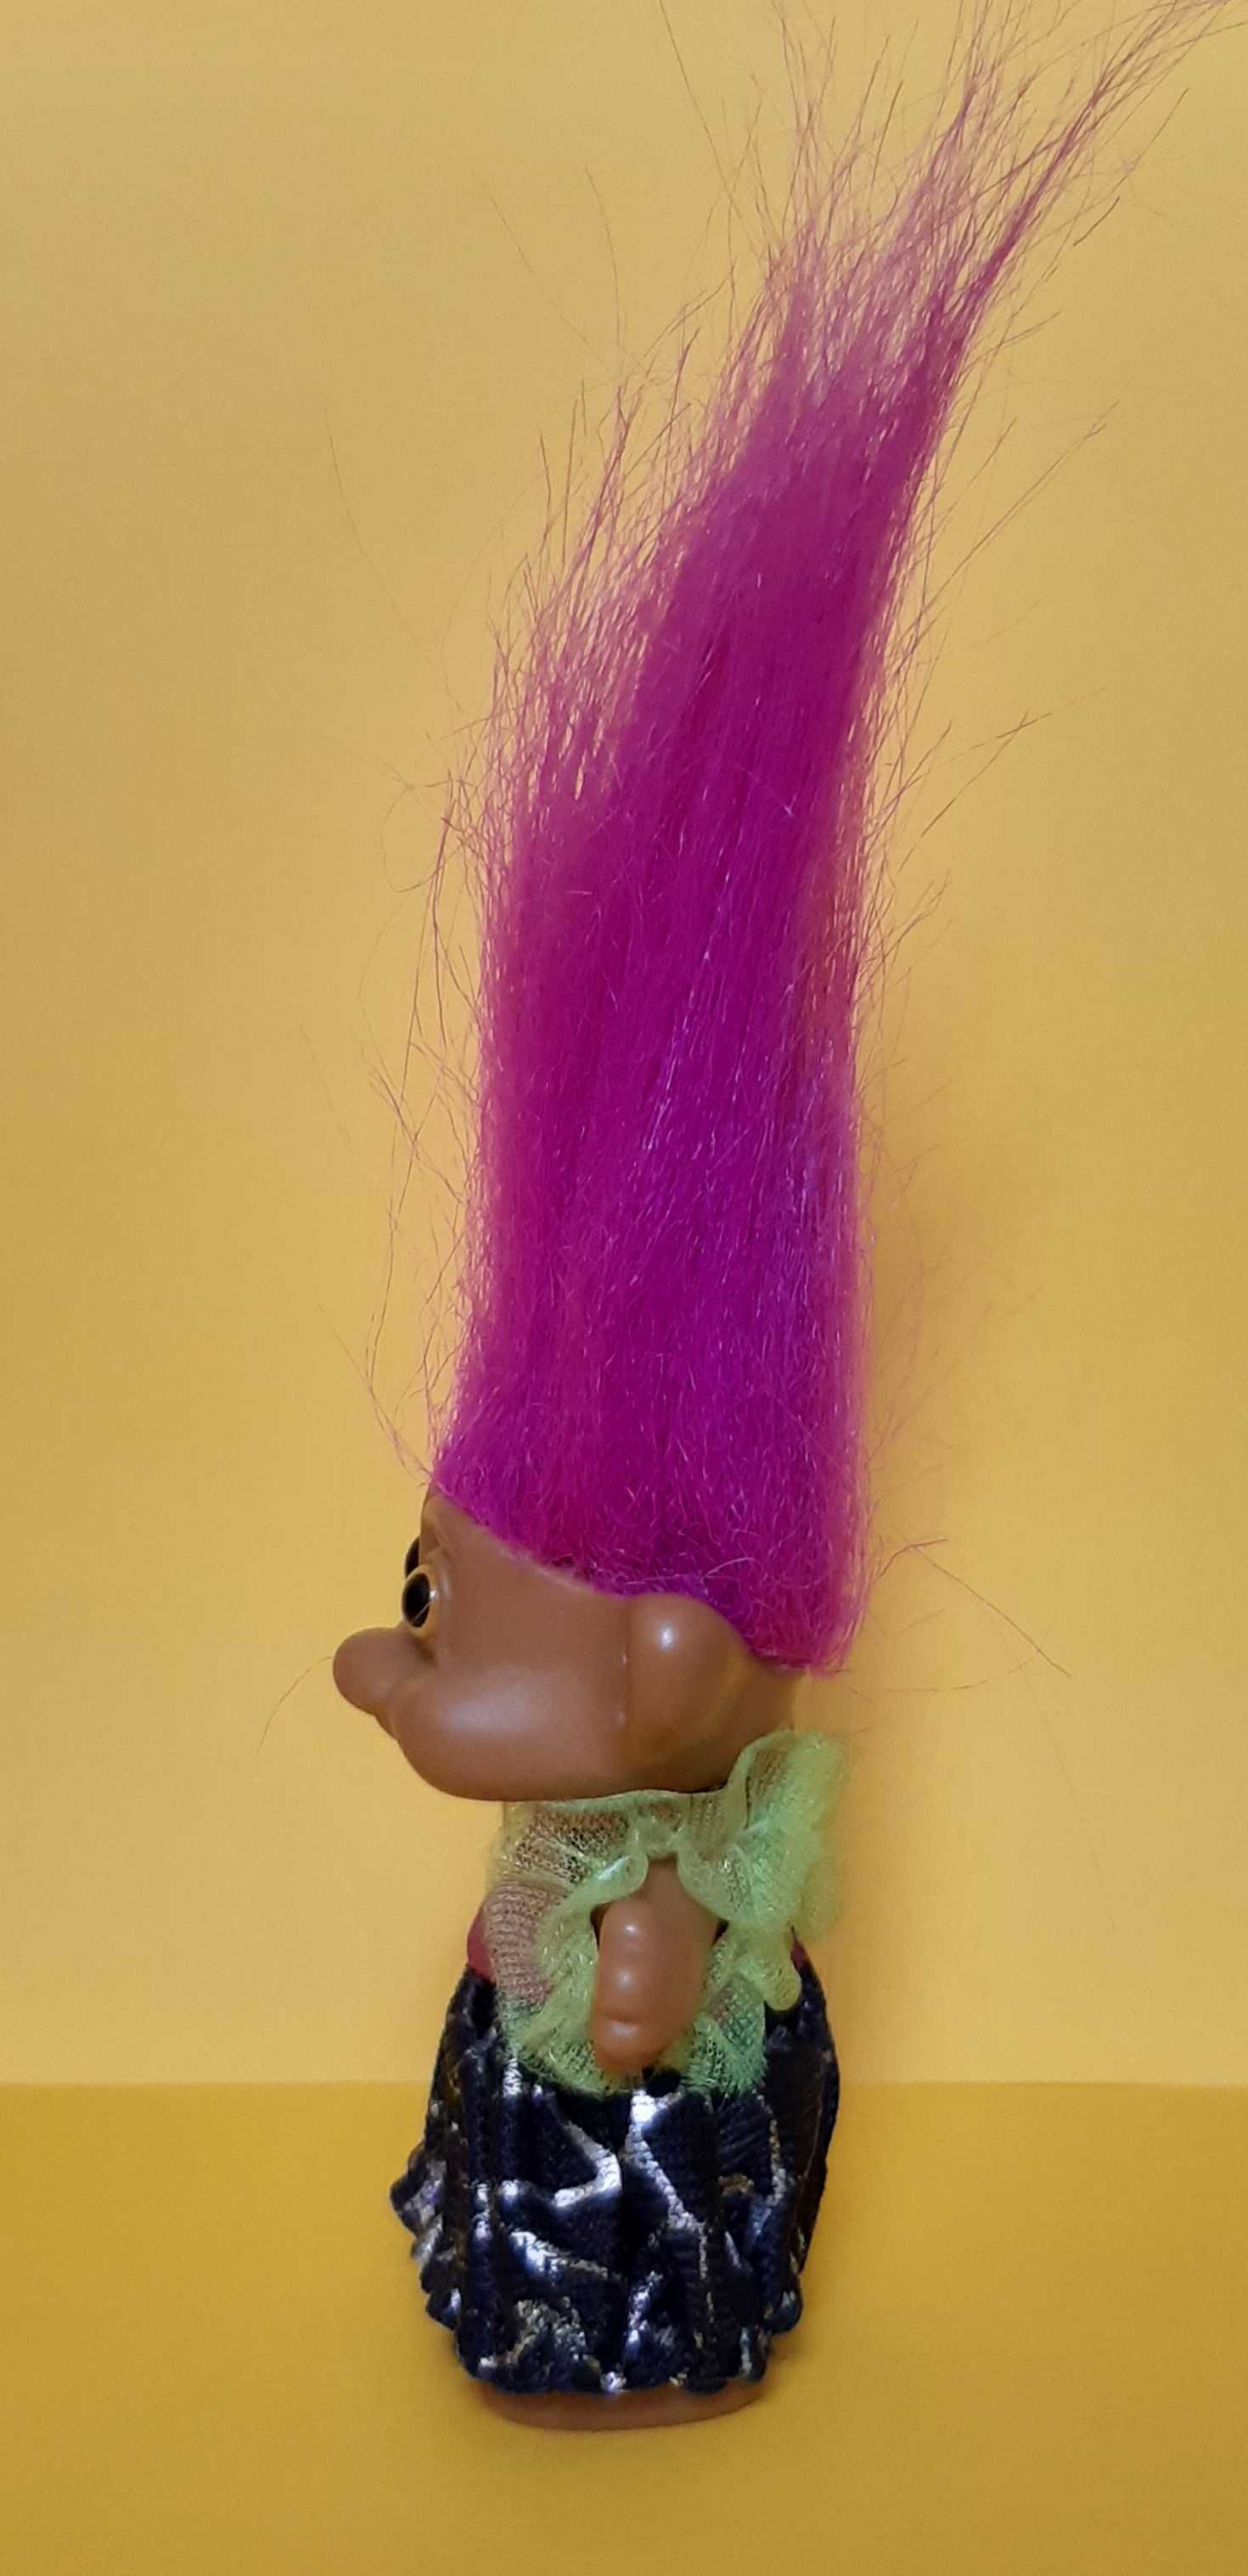 Arlenco figurka troll z lat 90.